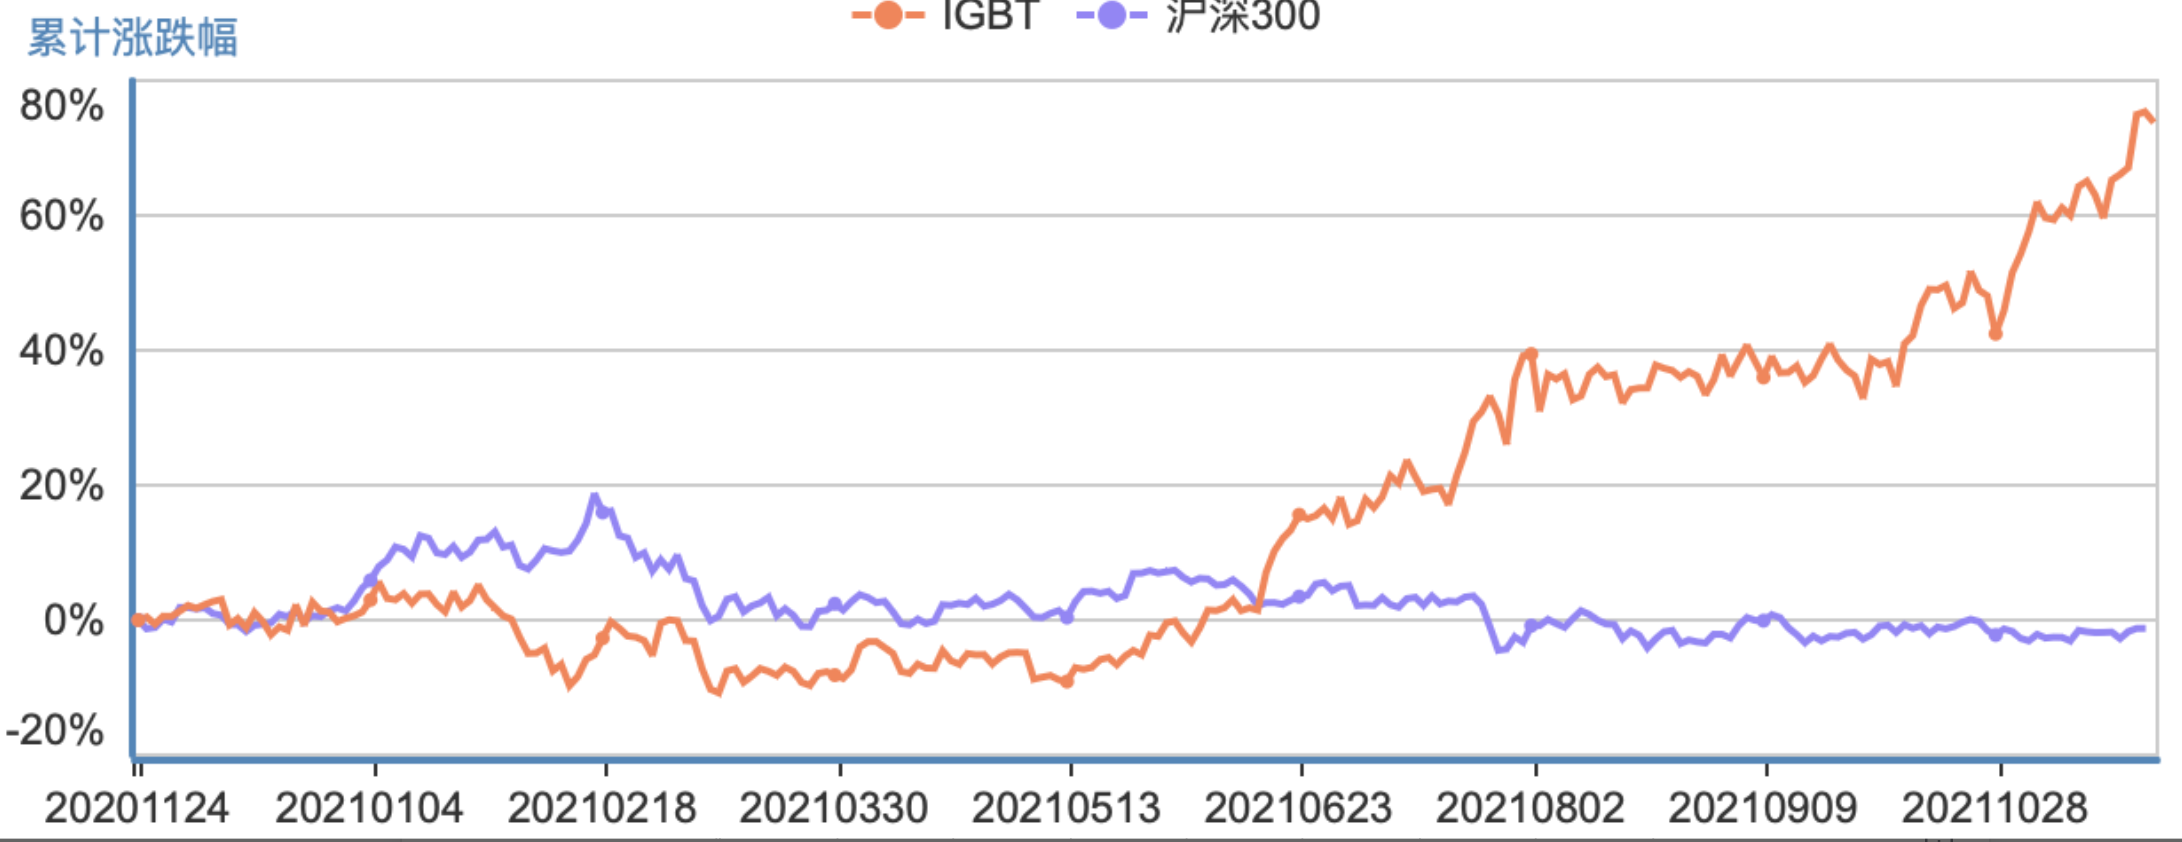 图：IGBT指数 vs 沪深300指数